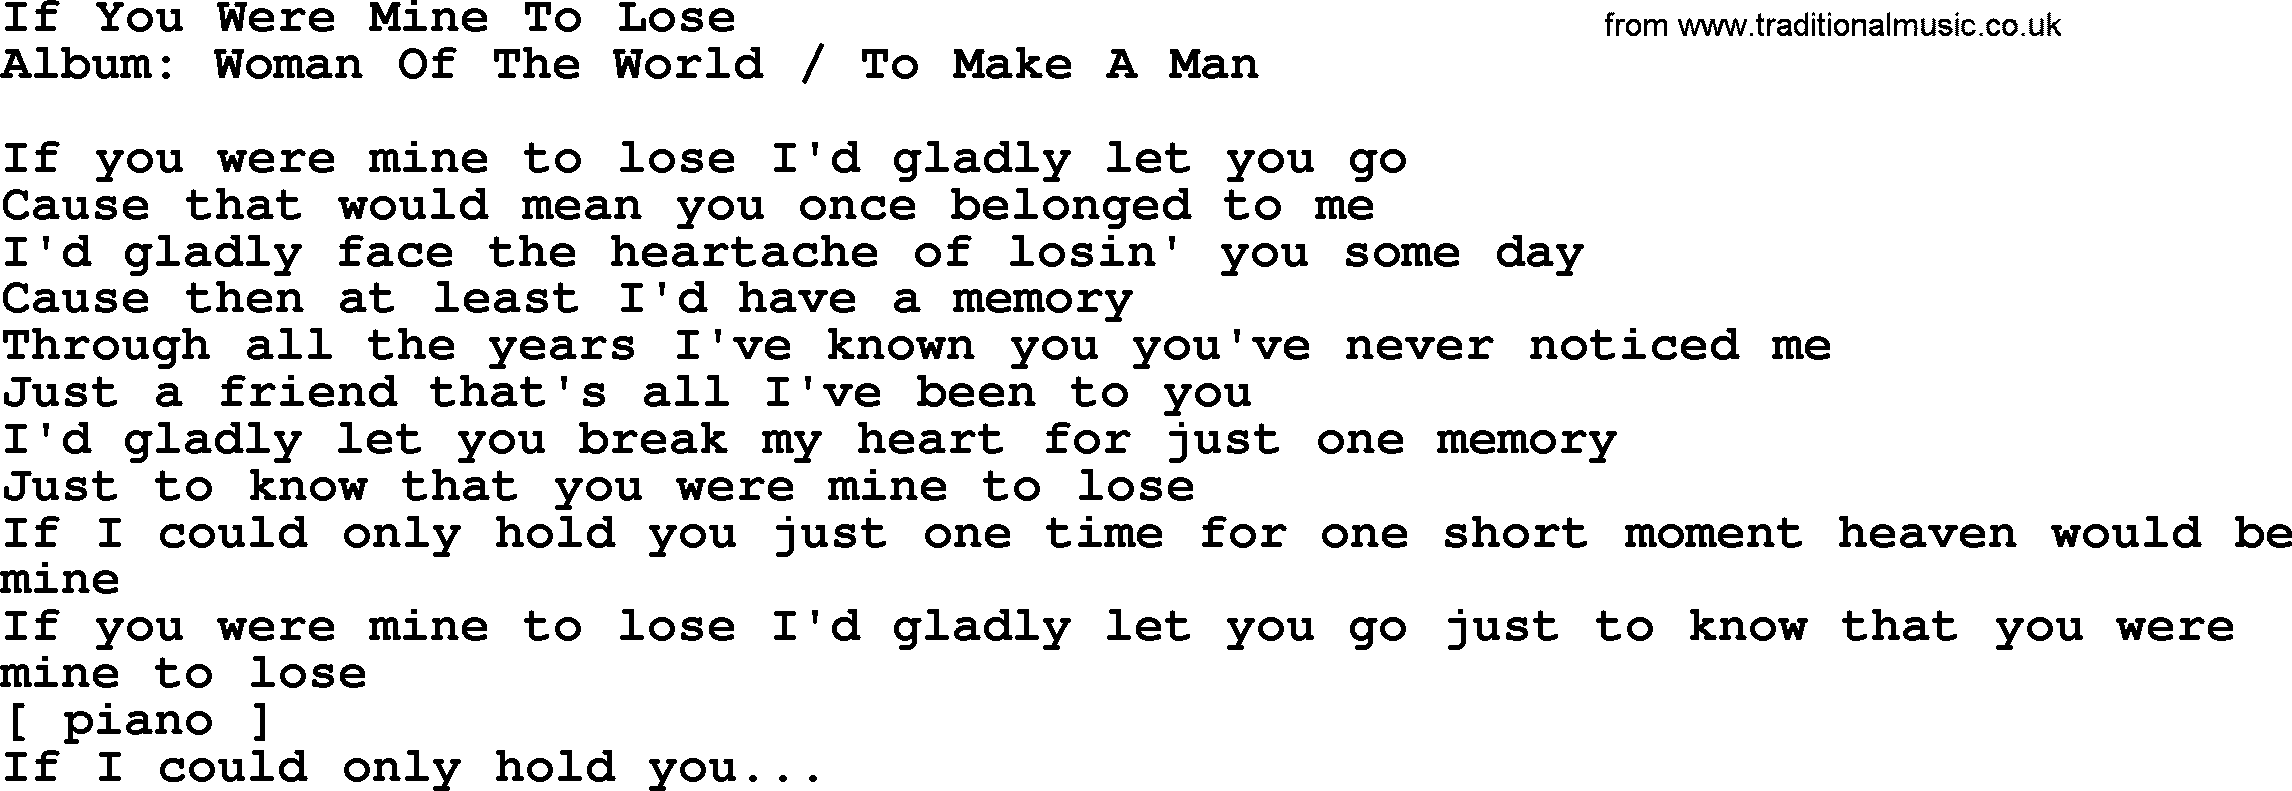 Loretta Lynn song: If You Were Mine To Lose lyrics